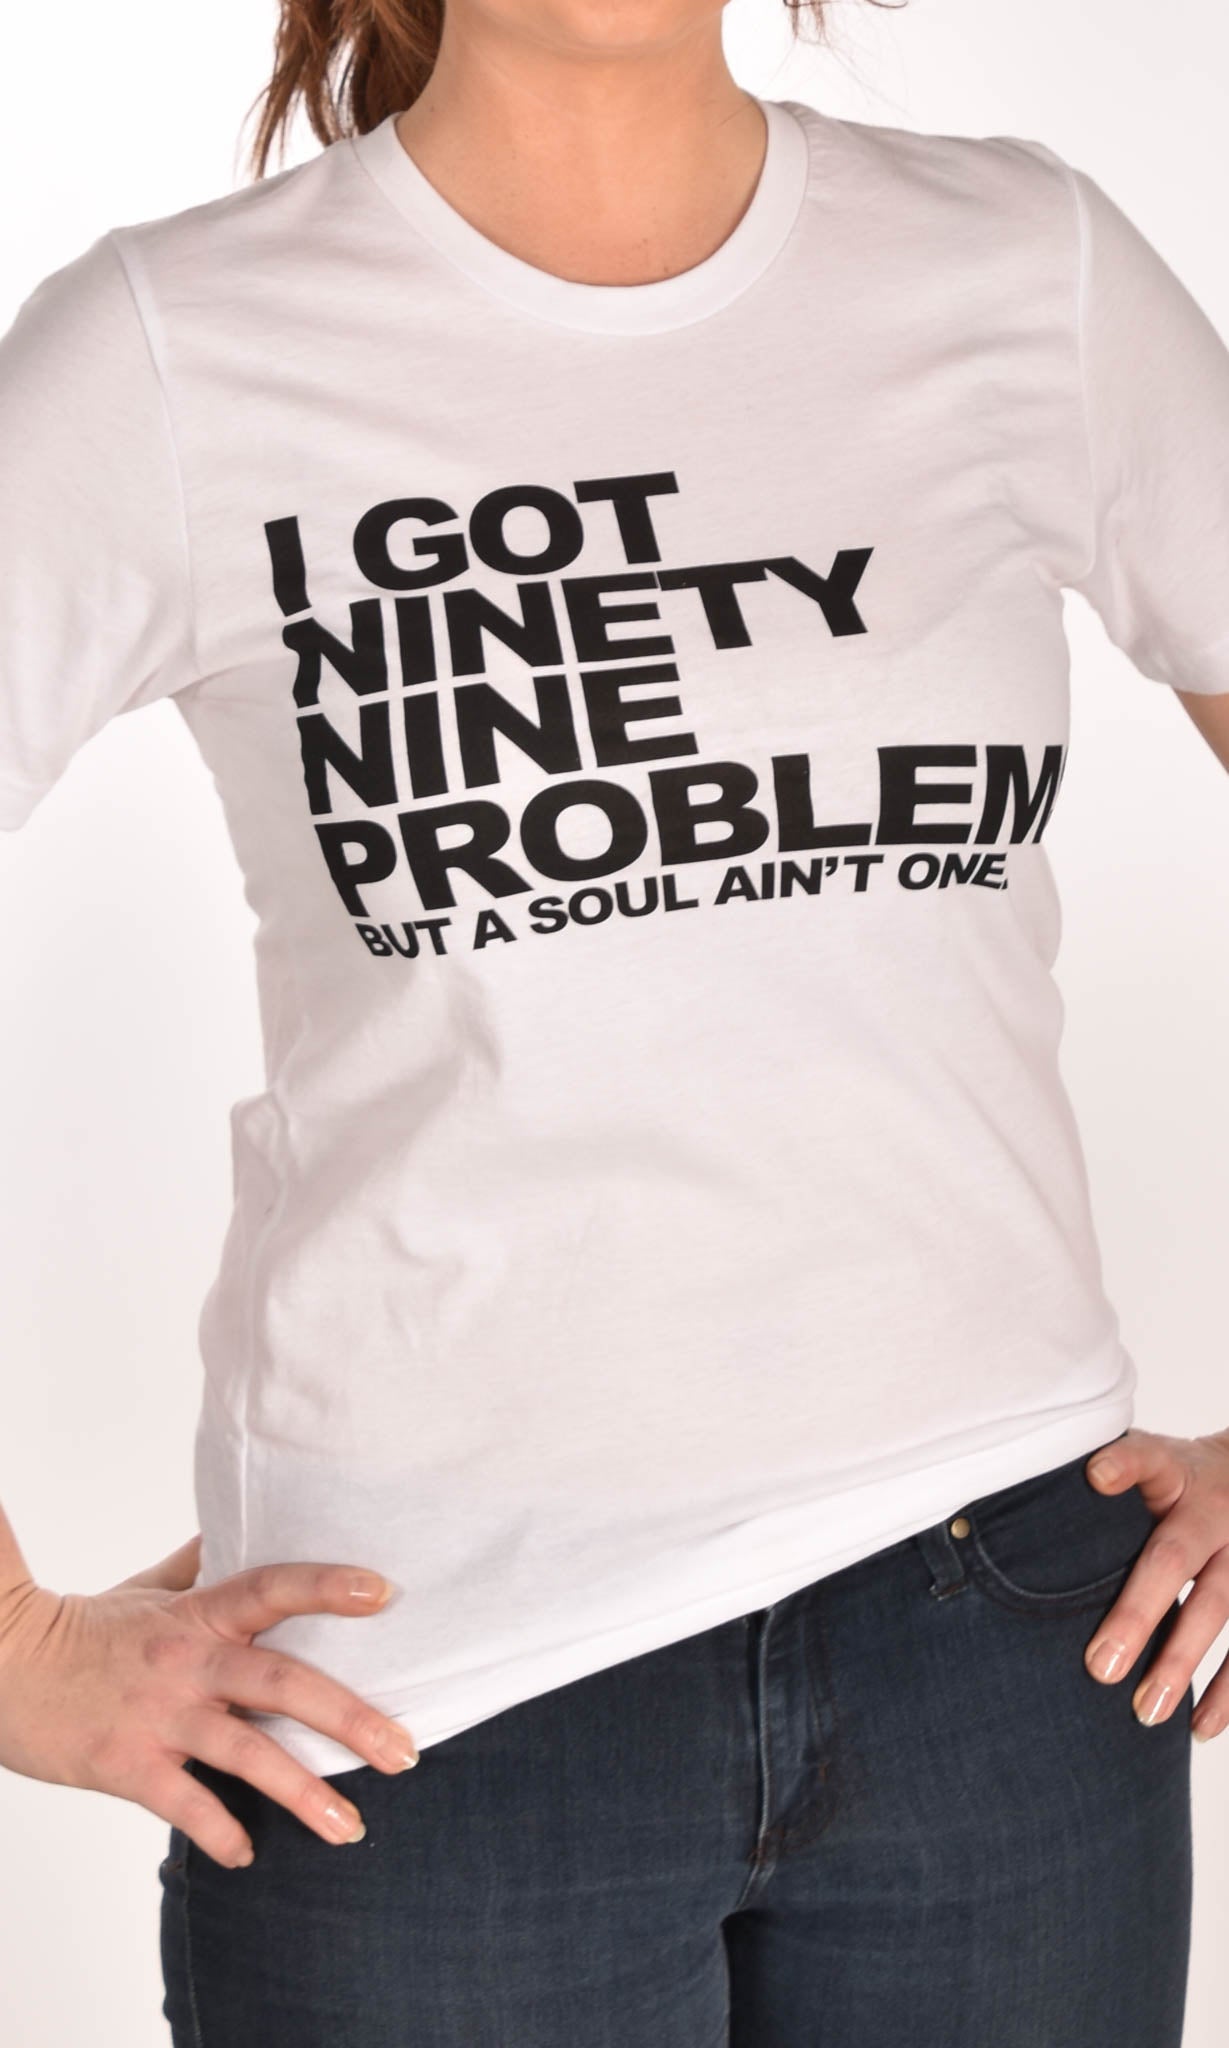 ExtraMedium 99 Problems Jersey T-Shirt